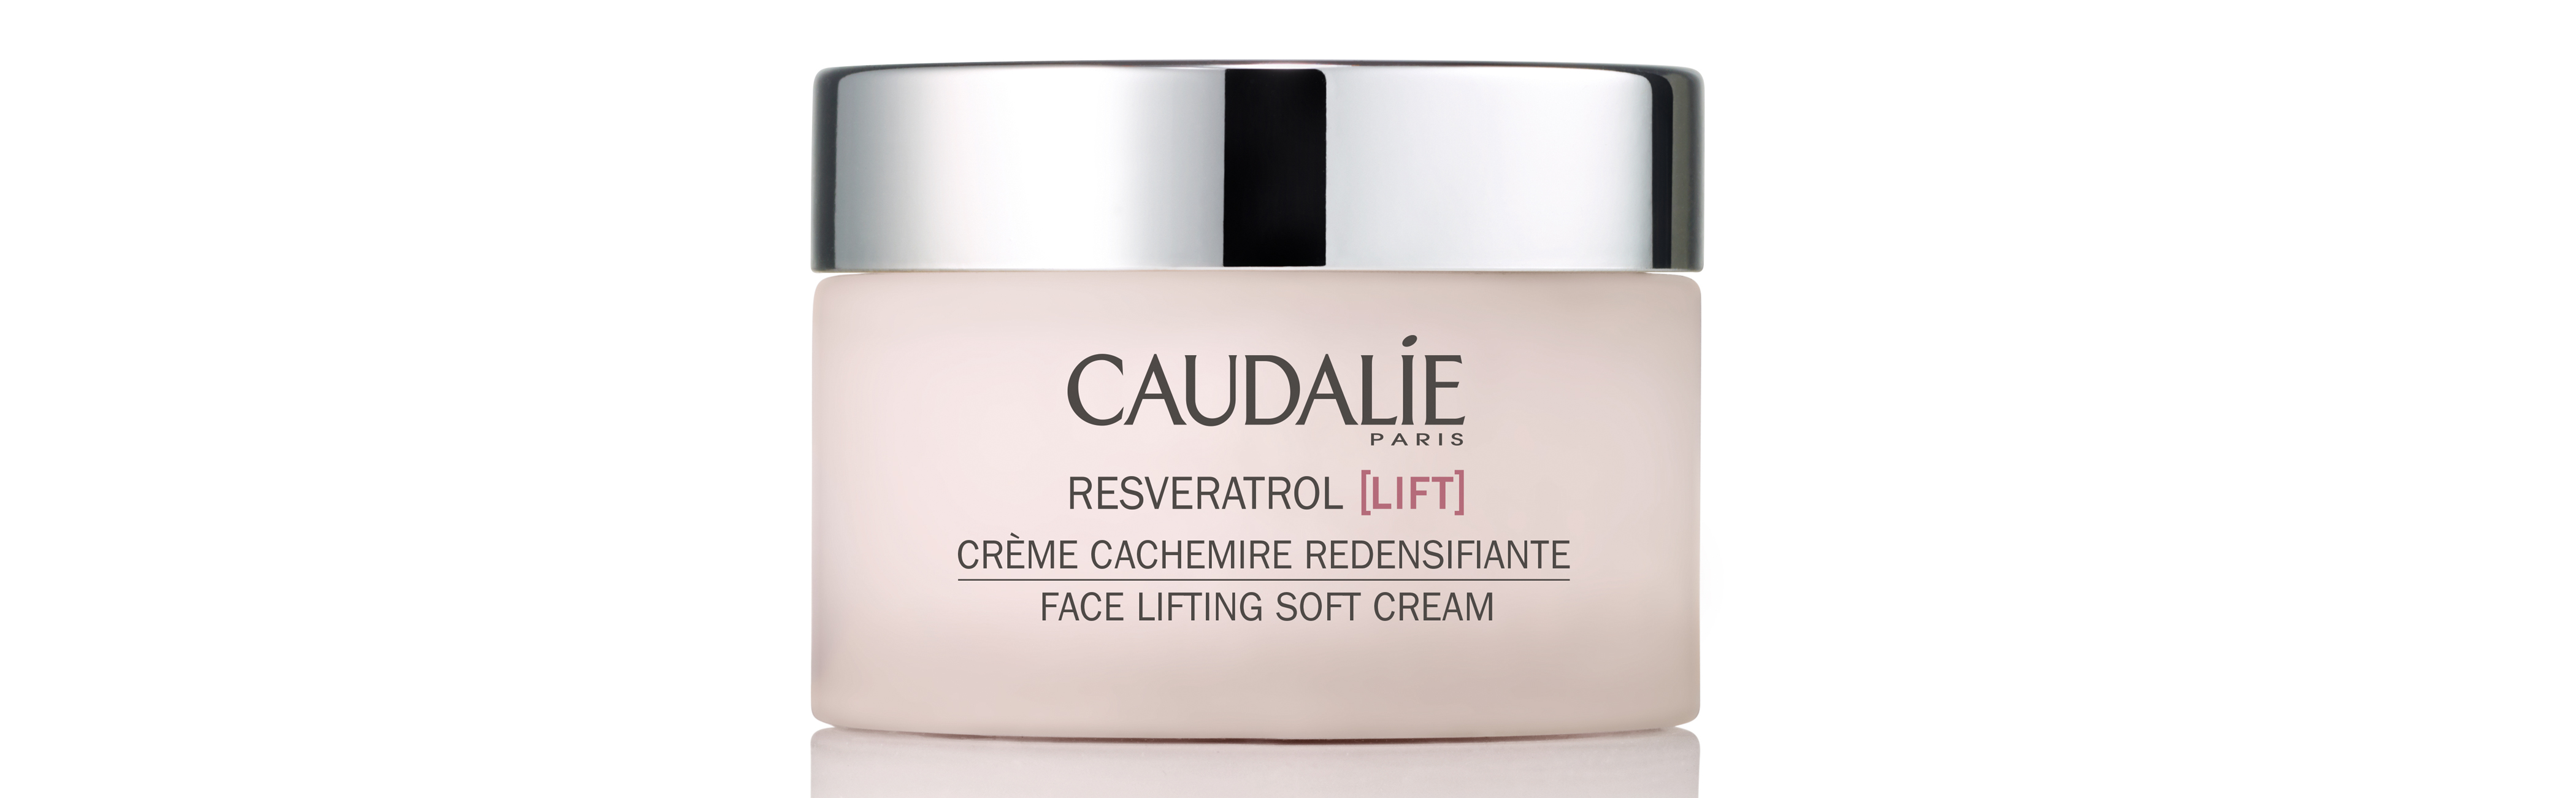 Caudalie Resveratrol Face Lifting Soft Creme